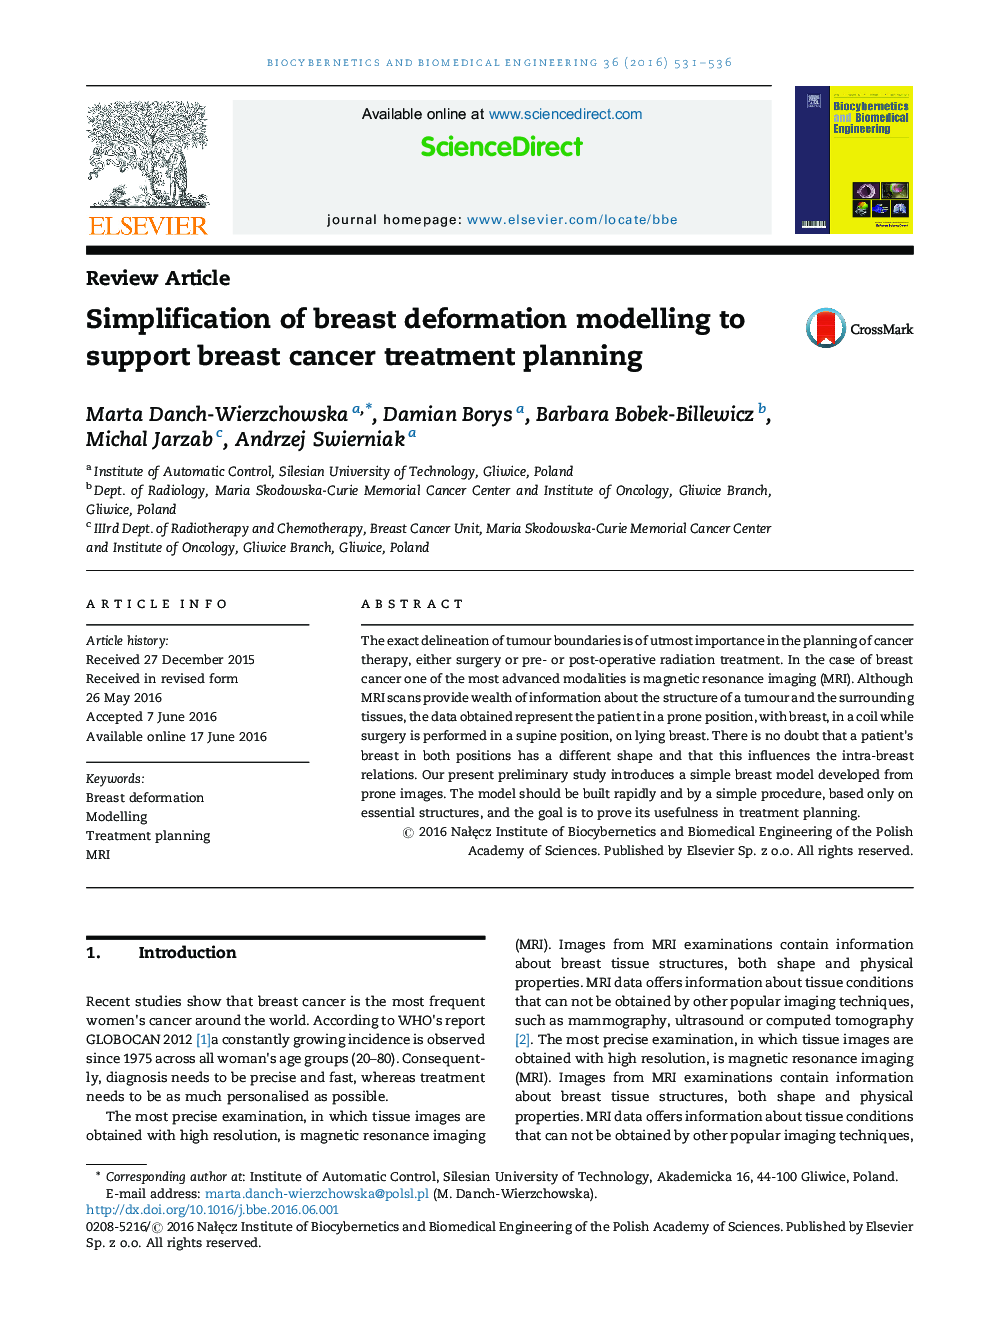 ساده سازی مدل تغییر شکل پستان برای حمایت از برنامه ریزی درمان سرطان پستان